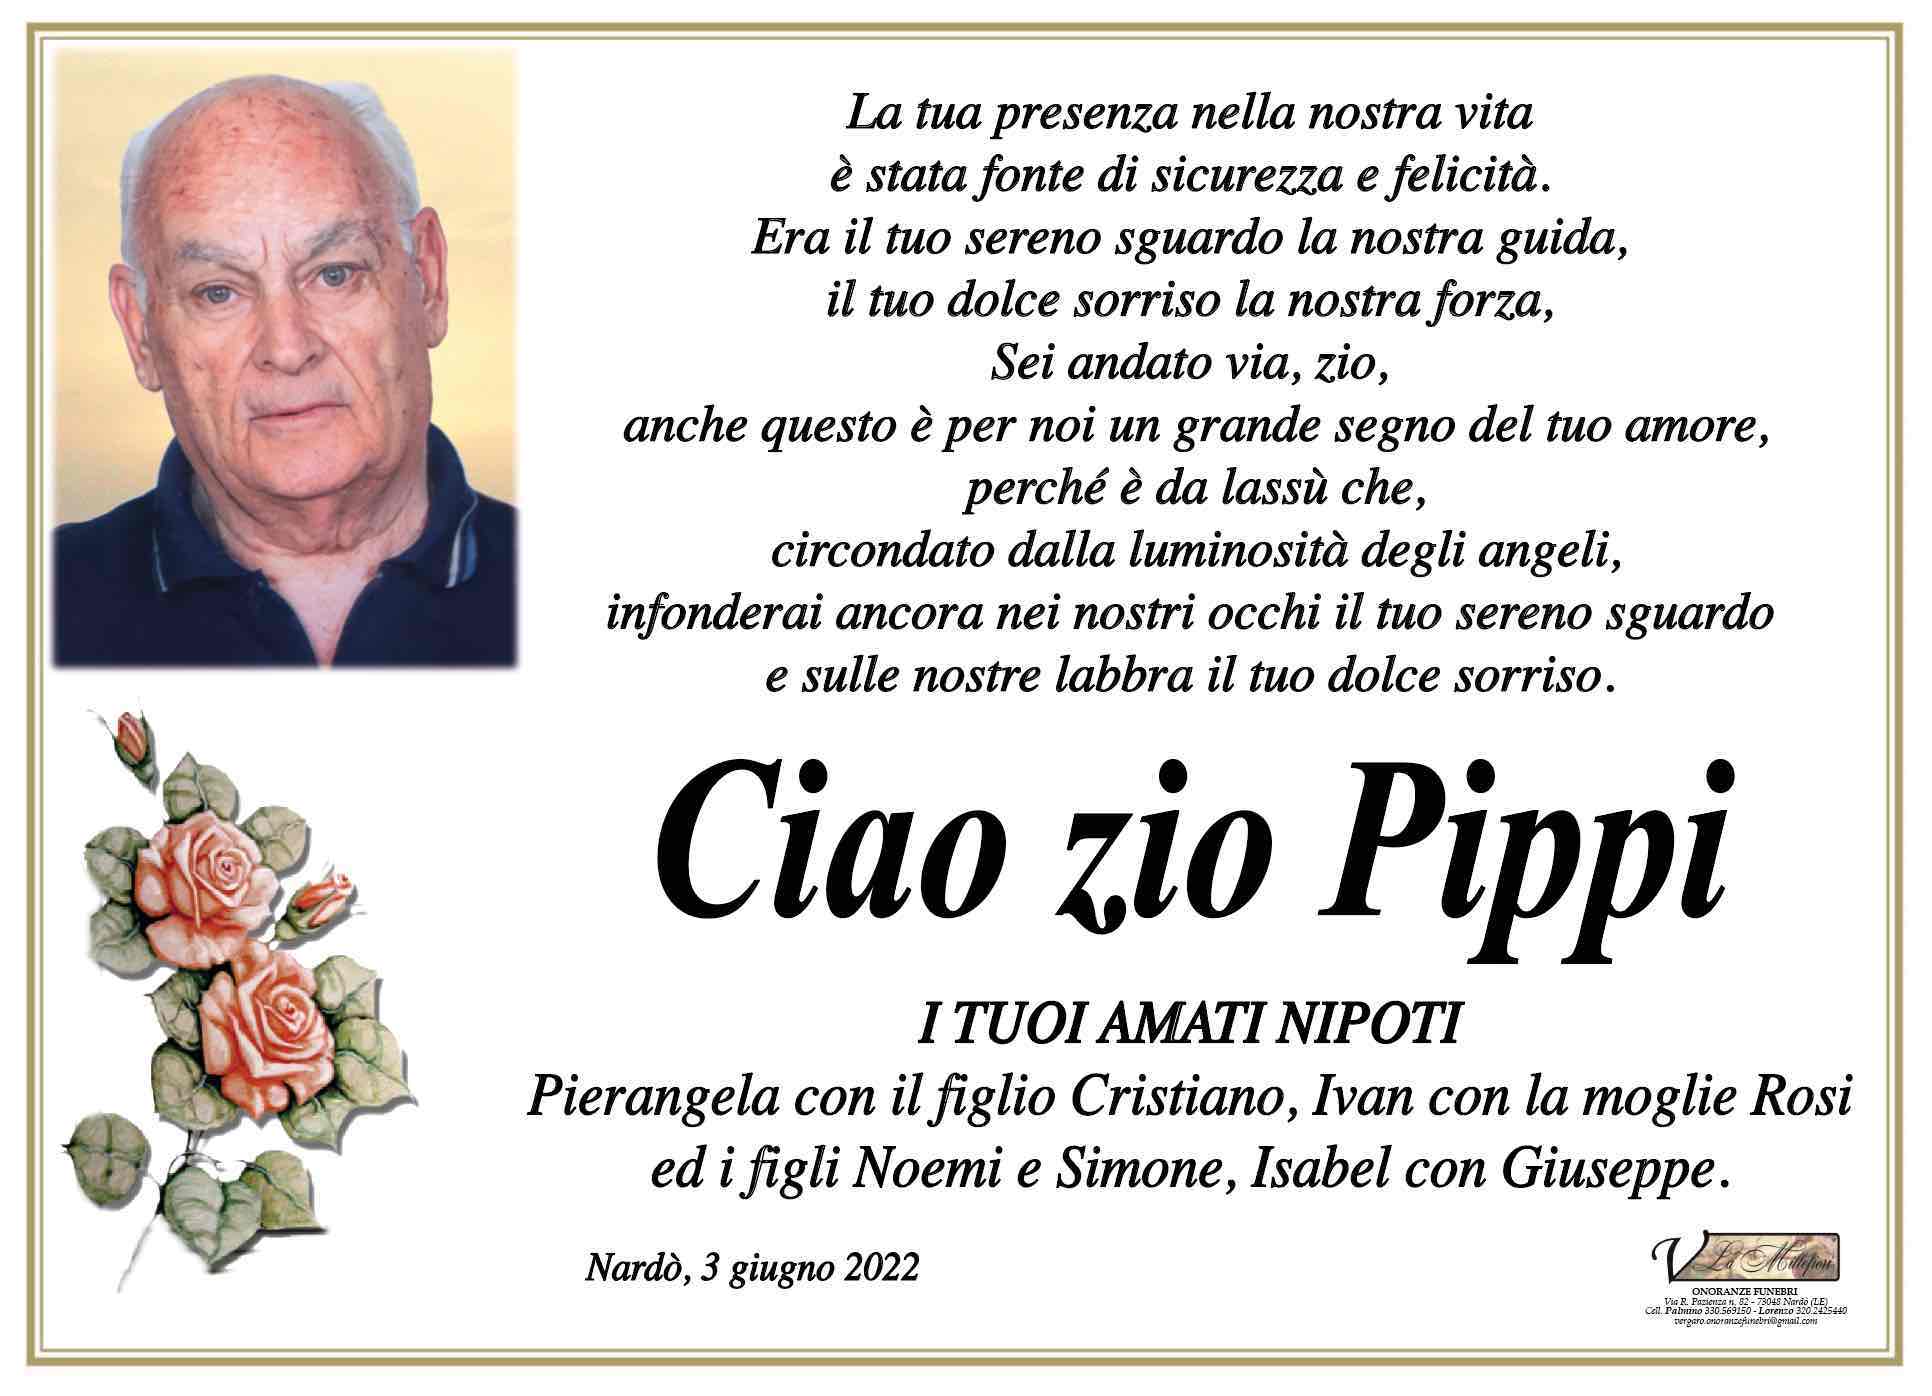 Pippi Russo